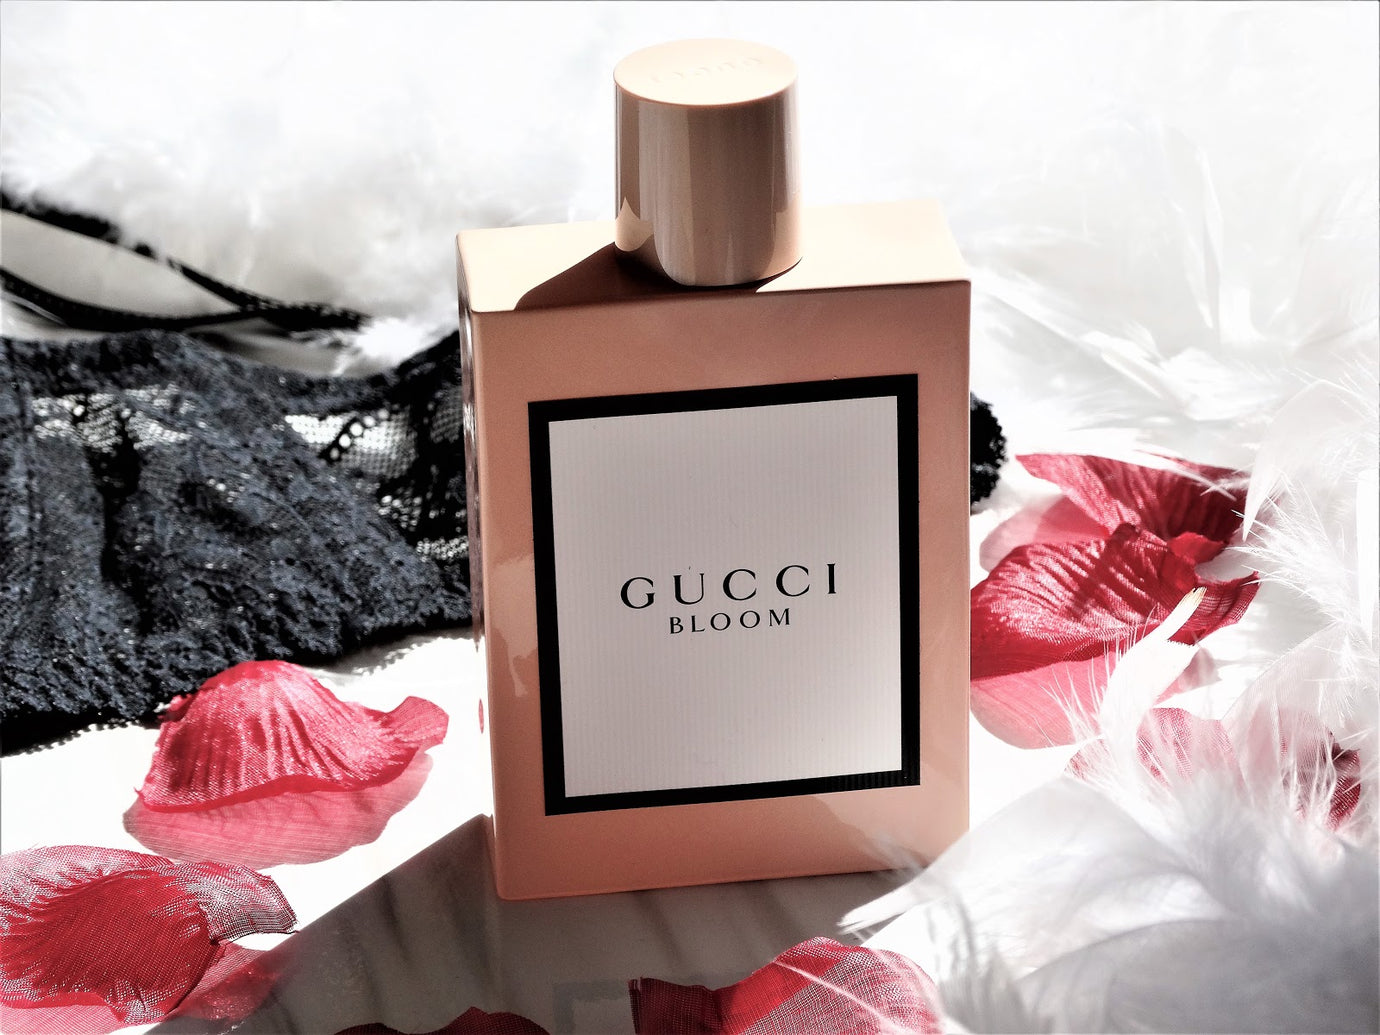 Eau de parfum inspired by GUCCI